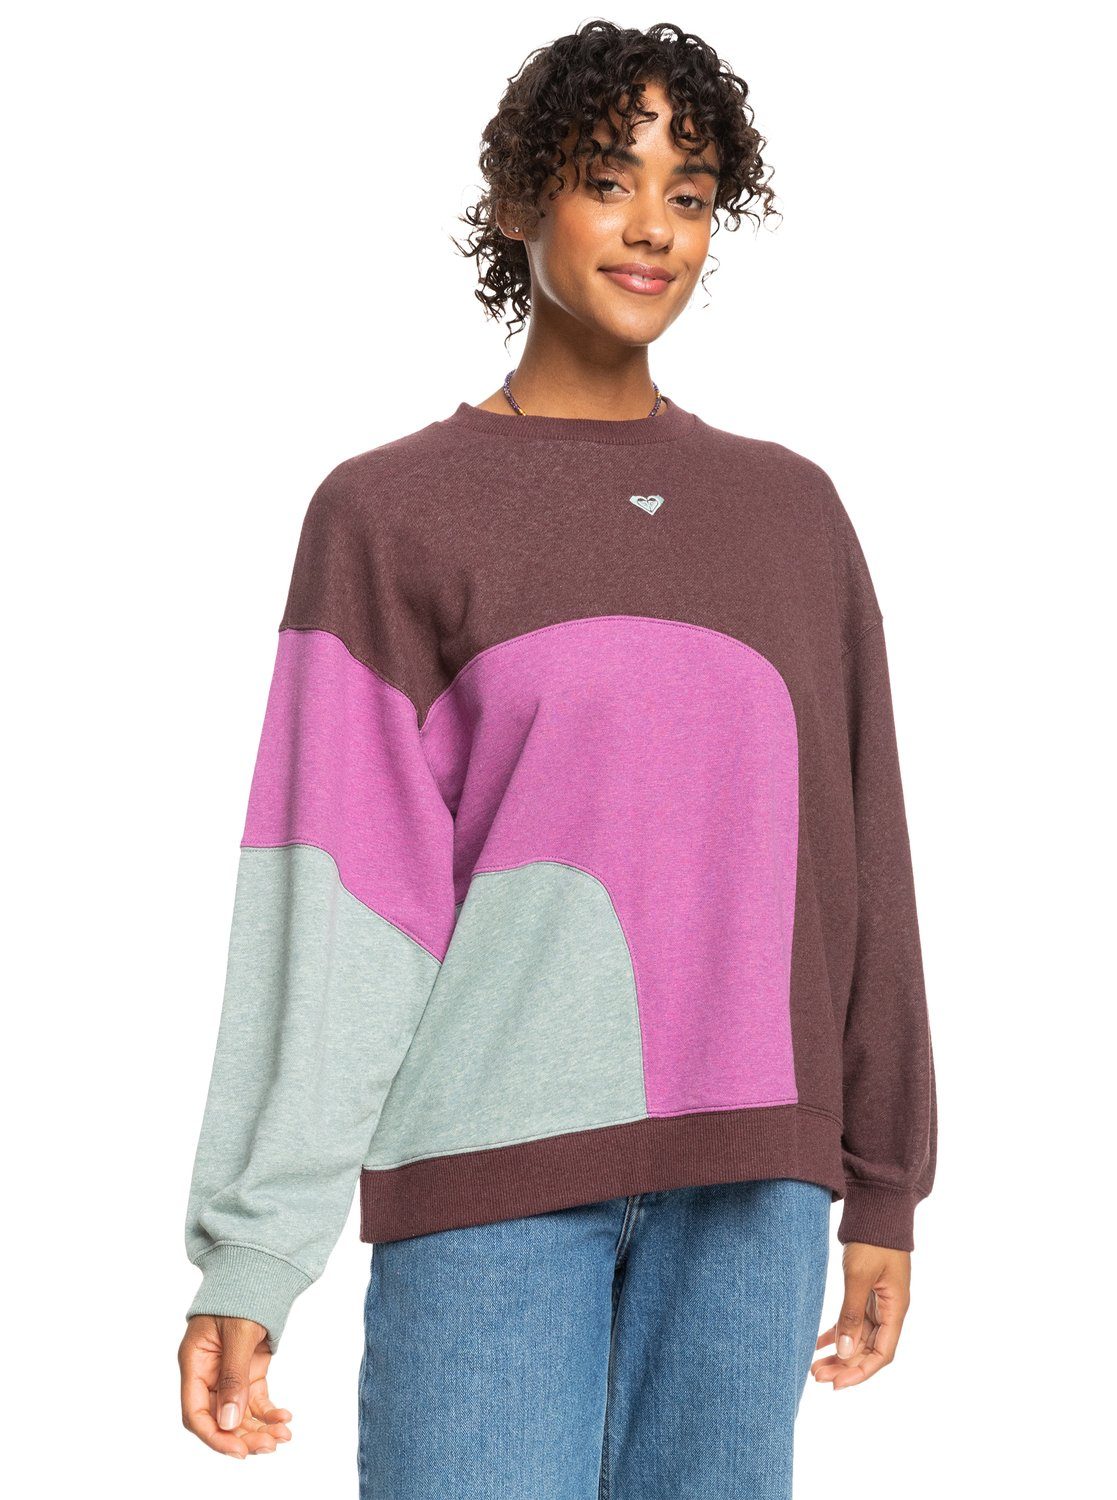 Daize Sweatshirt Happy Roxy